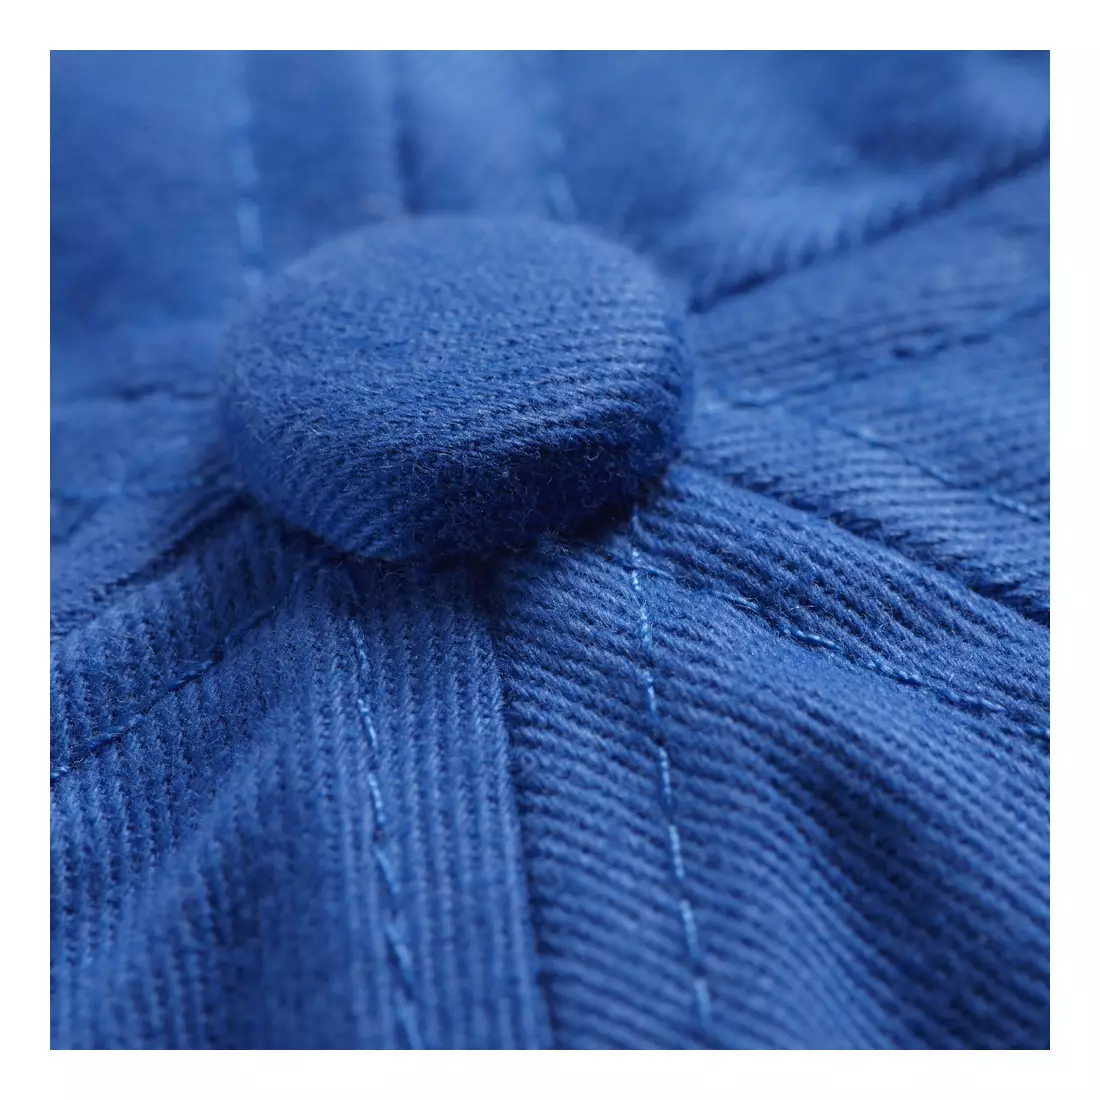 ASICS 110529-0861 LEGENDS CAP - sportovní kšiltovka, barva: Modrá